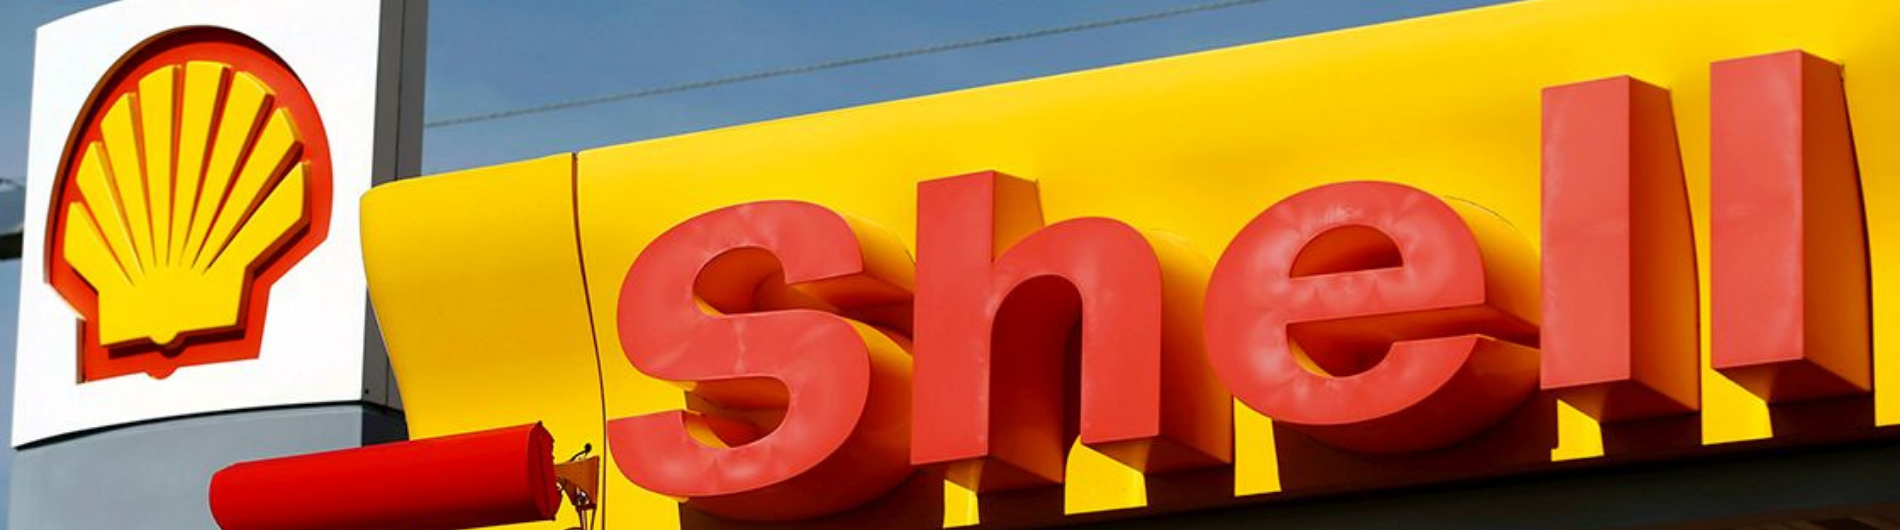 Shell se une a IRU para promover el uso global de energías ecológicas